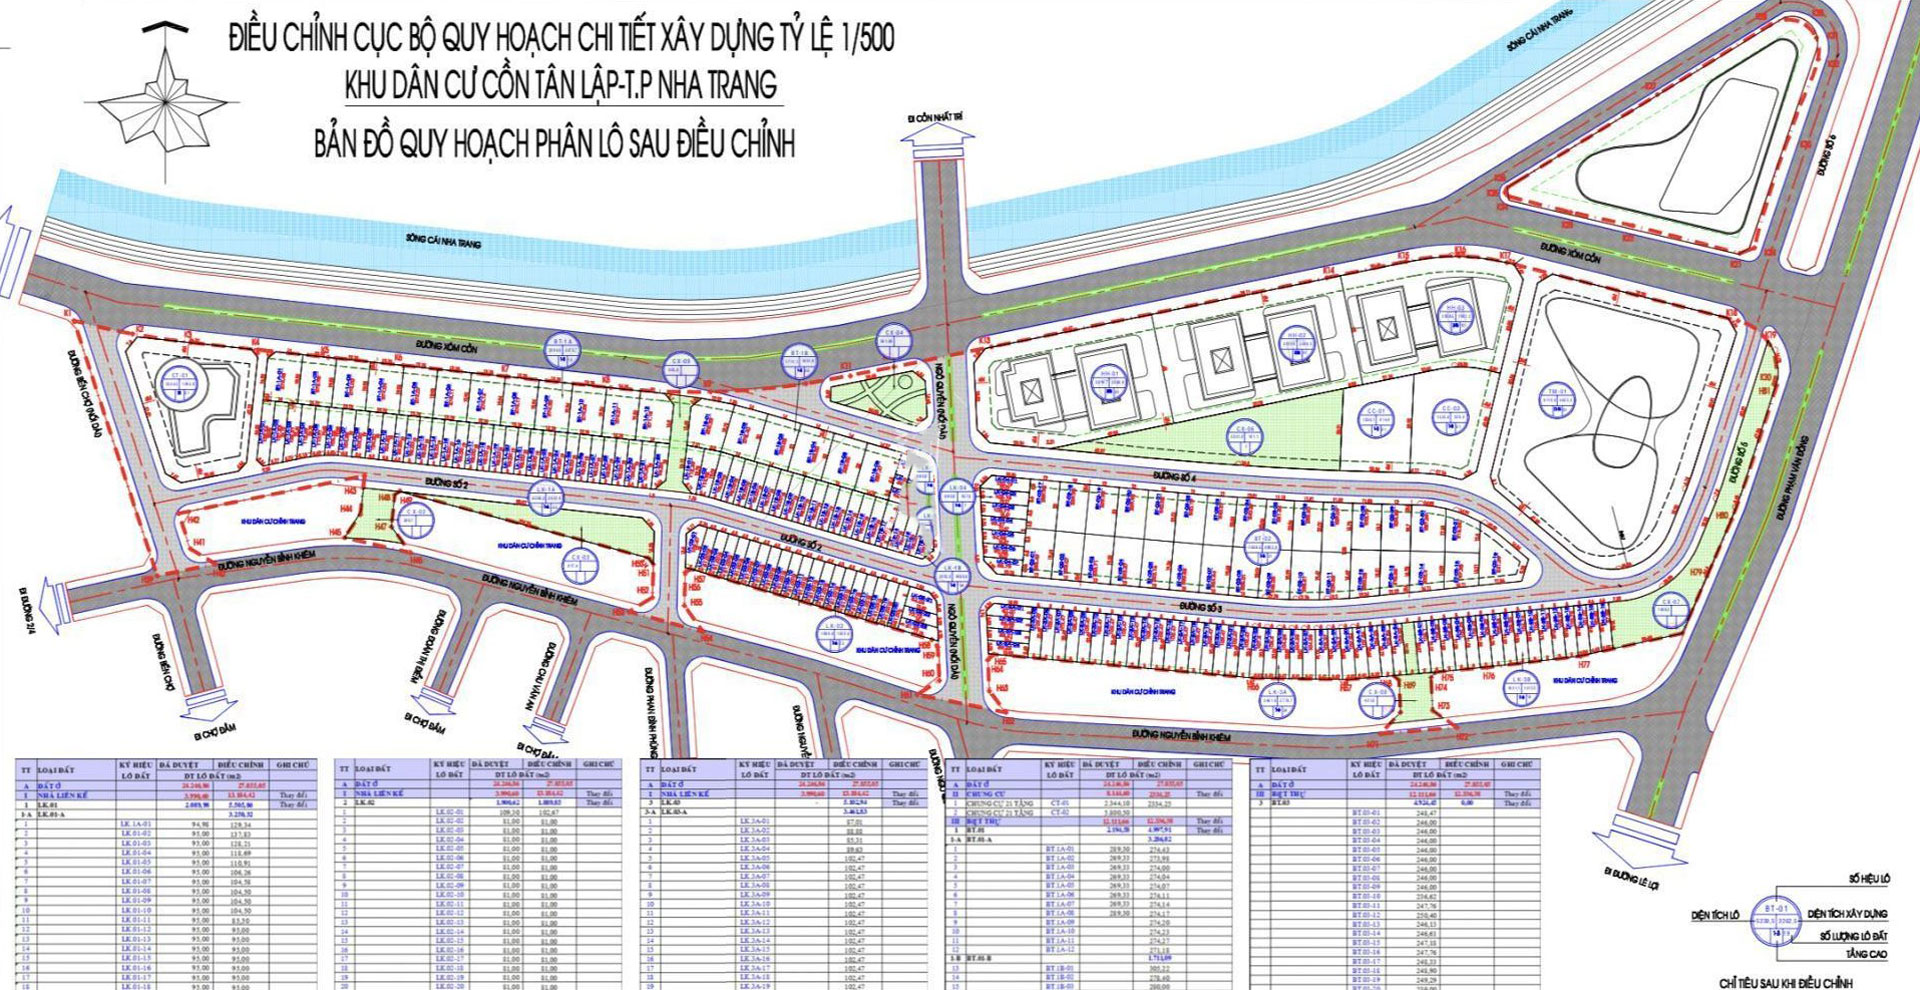 Quy hoạch Tổng thể Căn hộ The Aston Nha Trang trong Khu đô thị Cồn Tân Lập